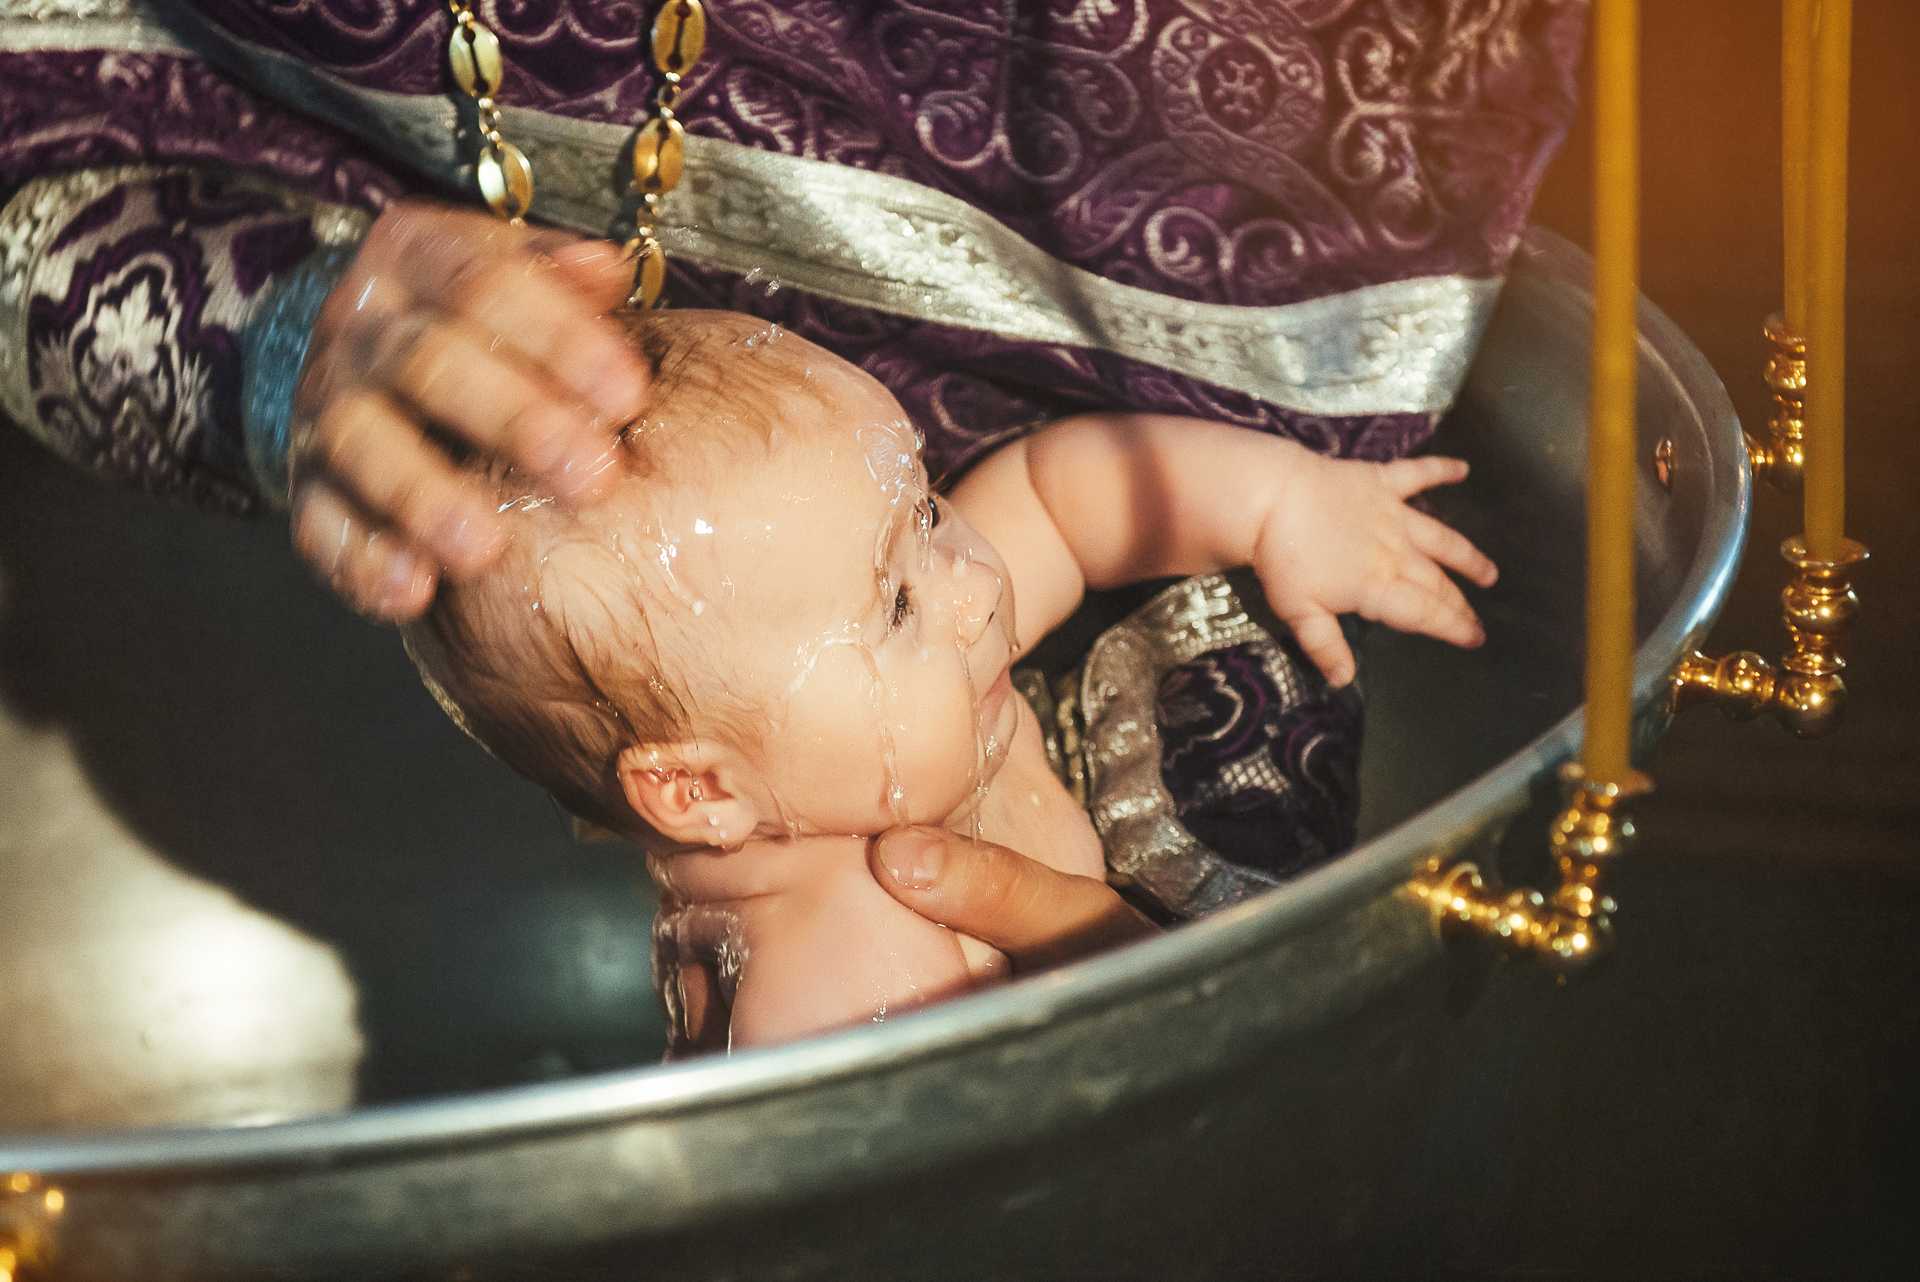 Могу ли я покрестить ребенка своей кумы. можно ли крестить ребенка у своих кумовьев